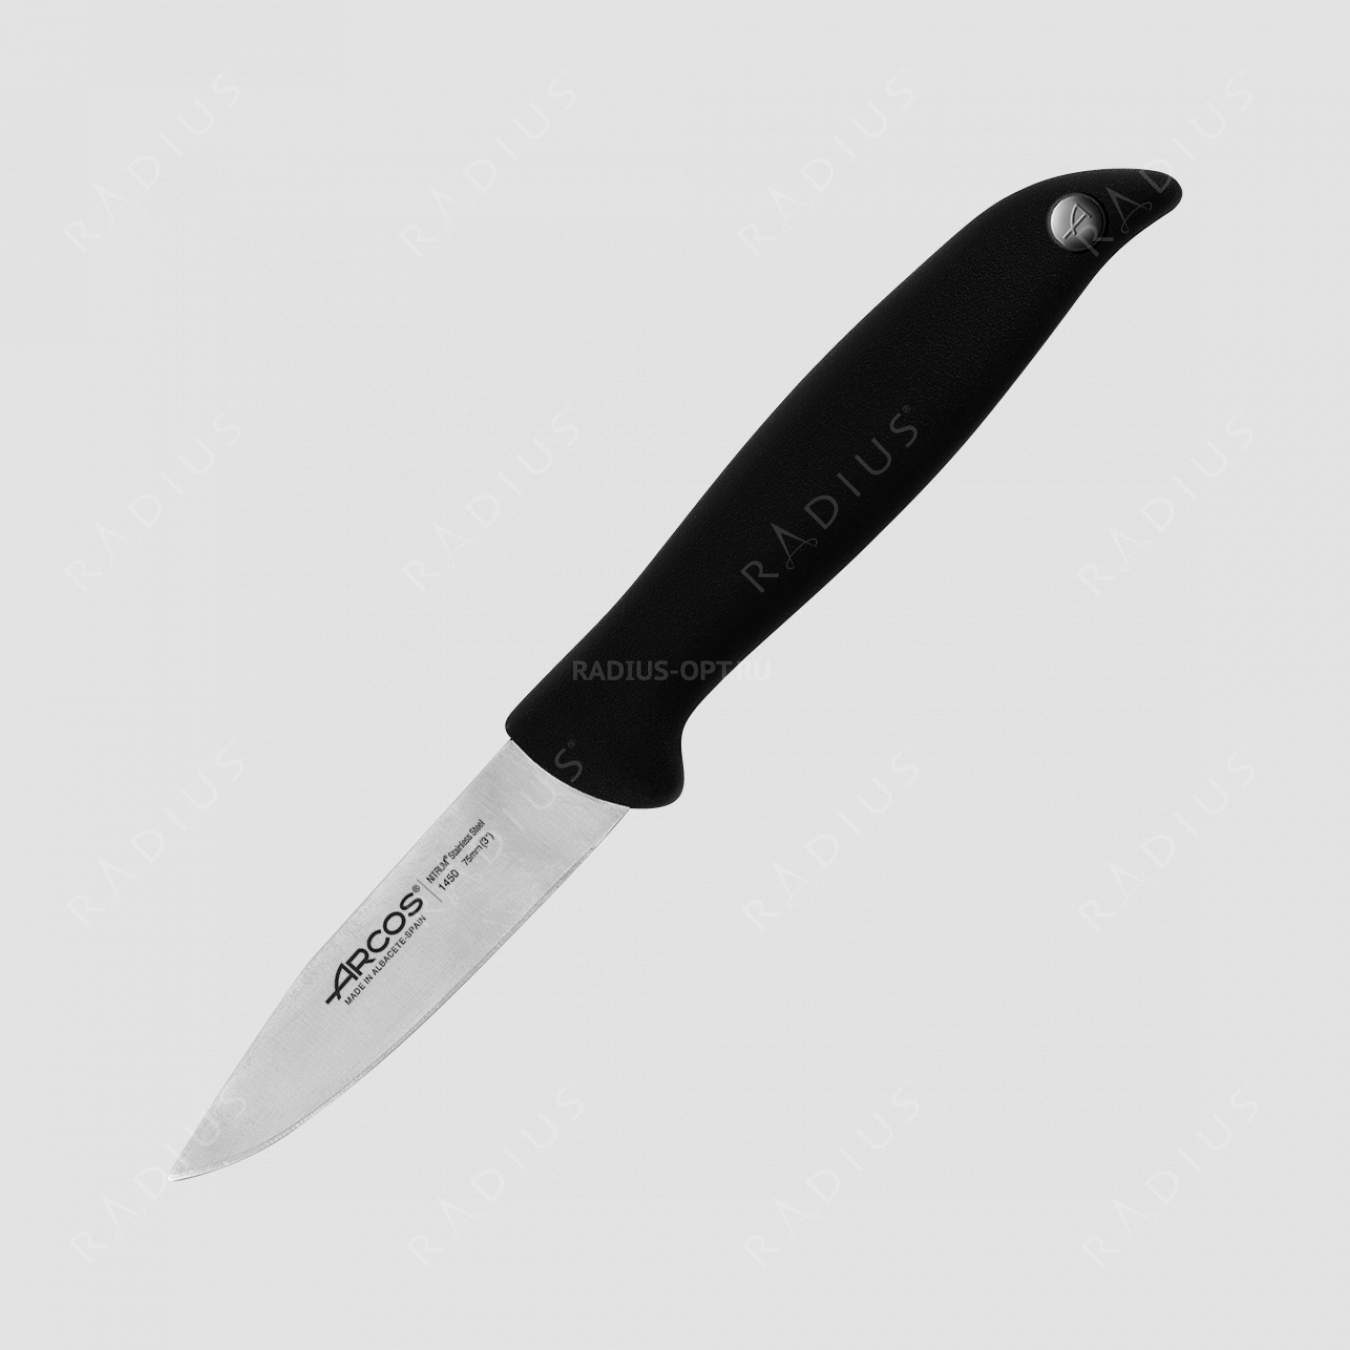 Нож кухонный для чистки 7,5 см, серия Menorca, ARCOS, Испания